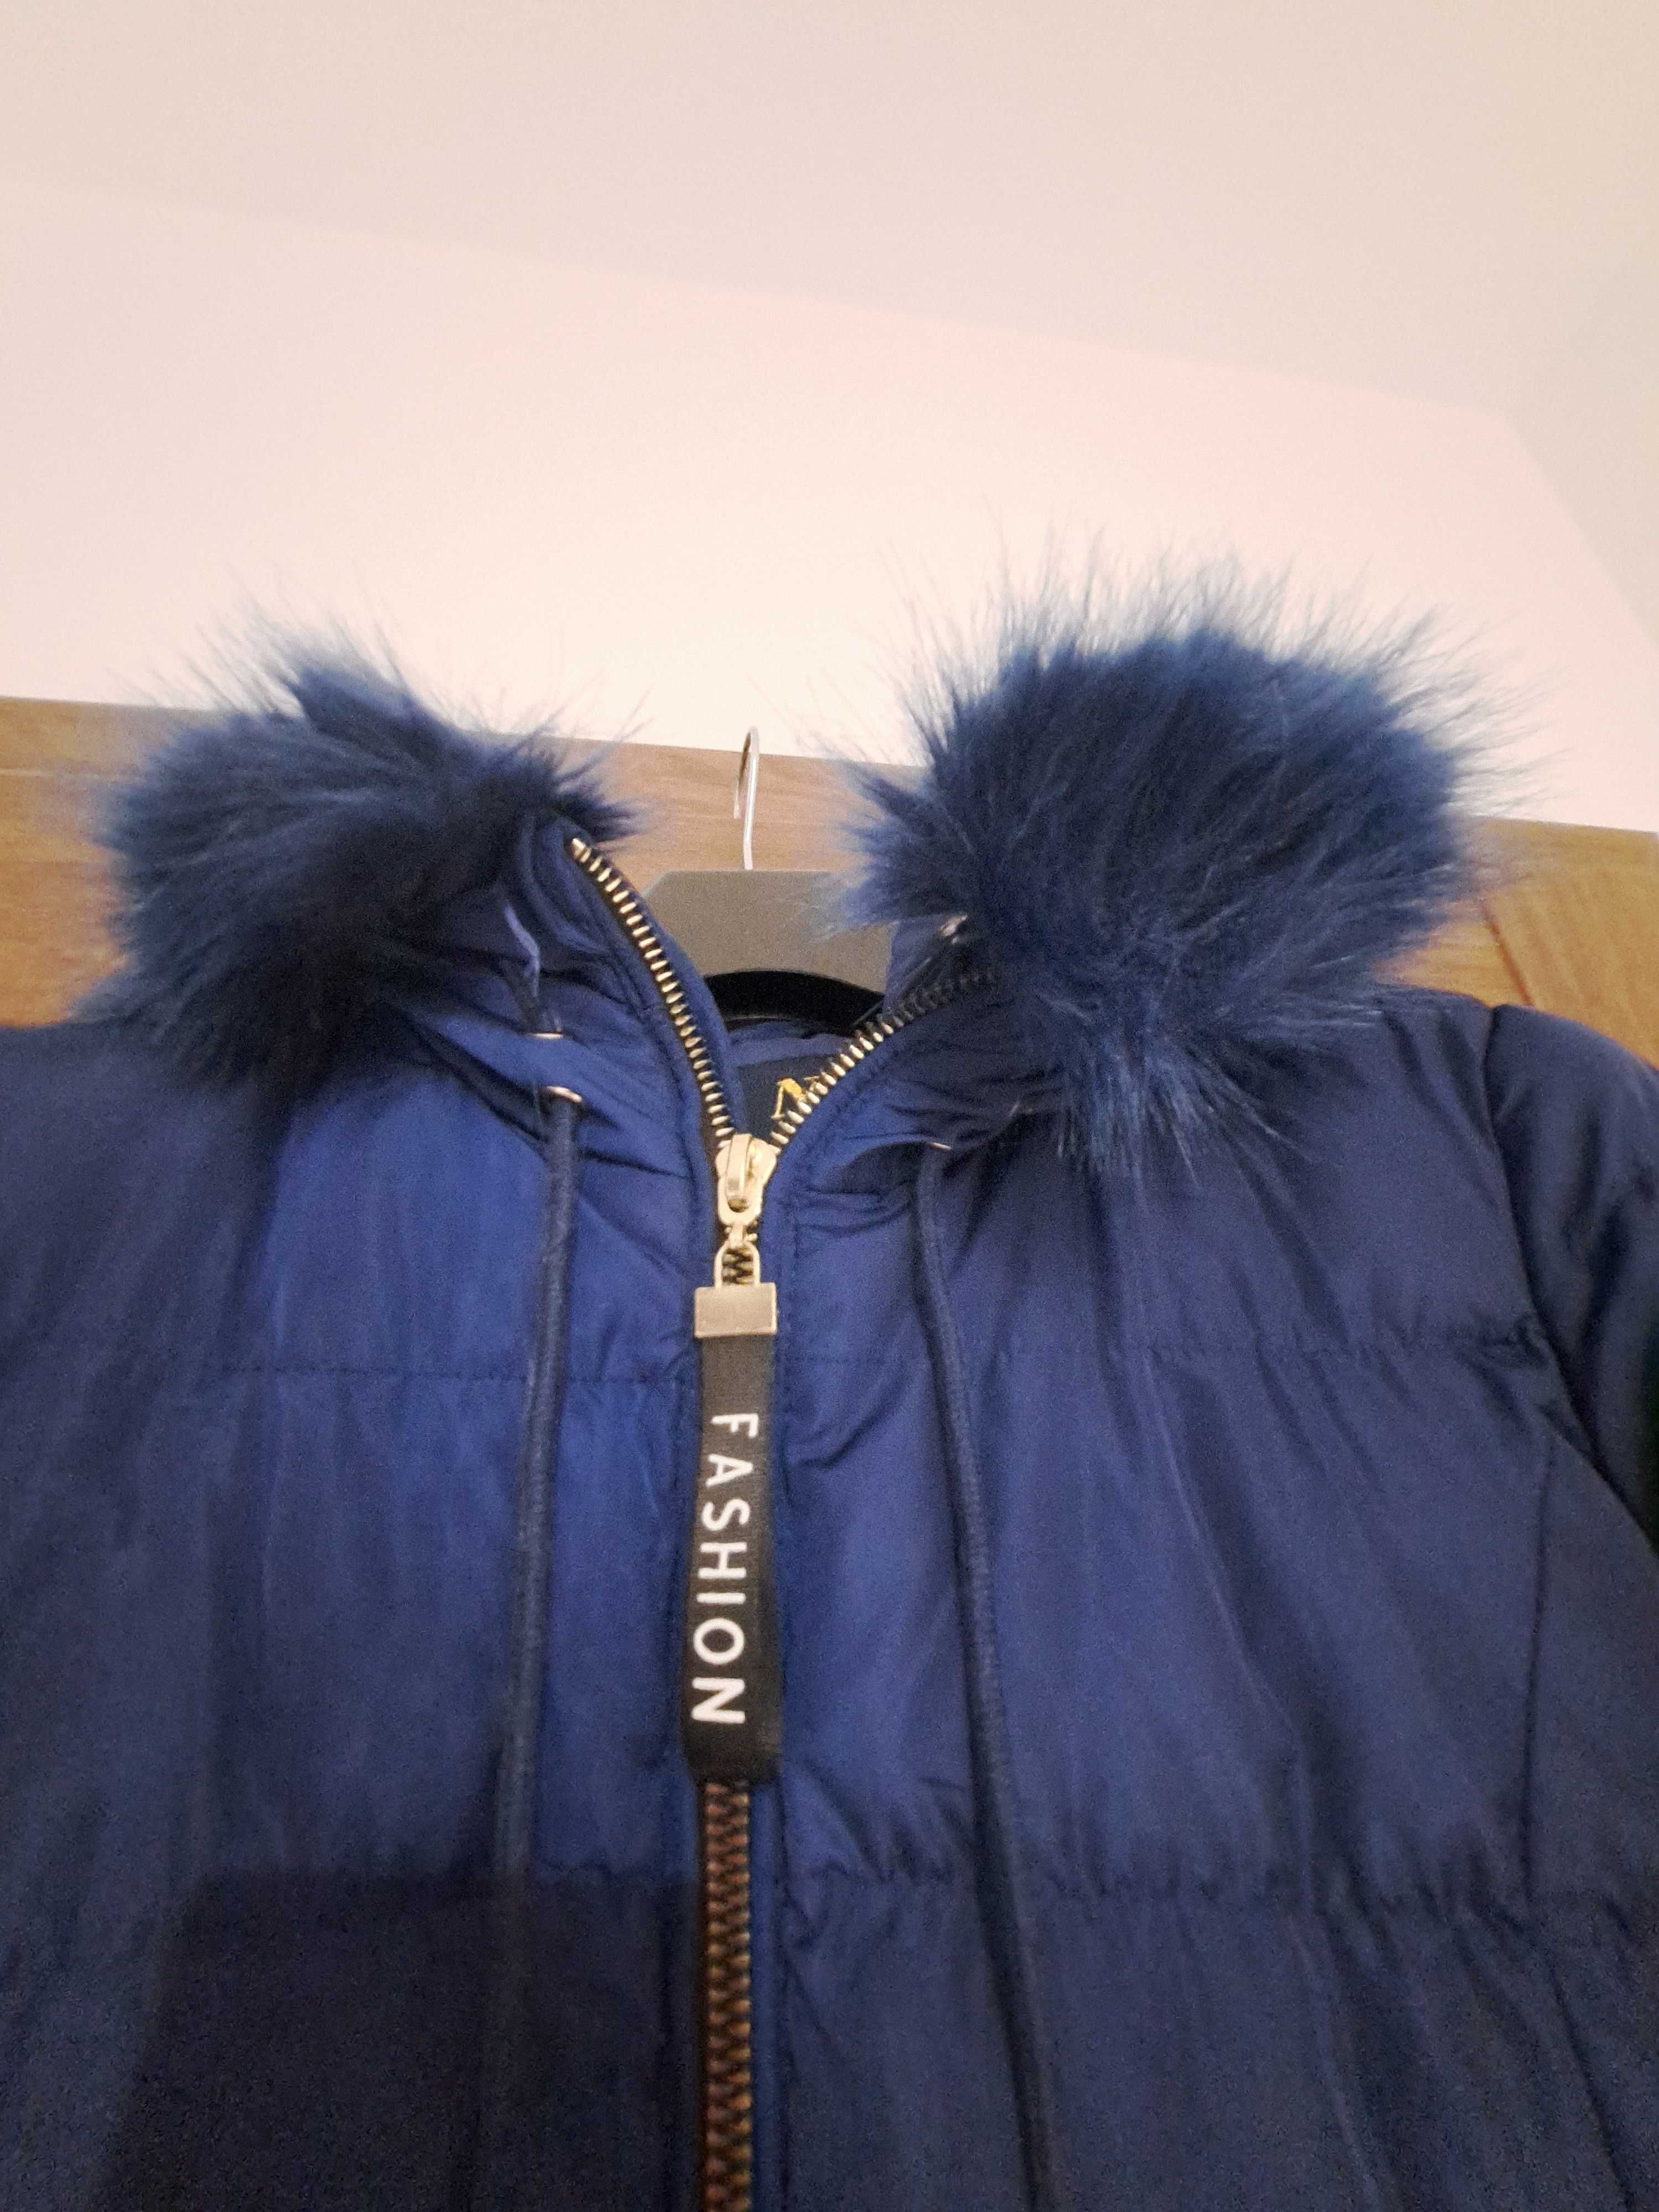 Kurtka ciepła płaszcz zimowa dla nastolatki r. 164